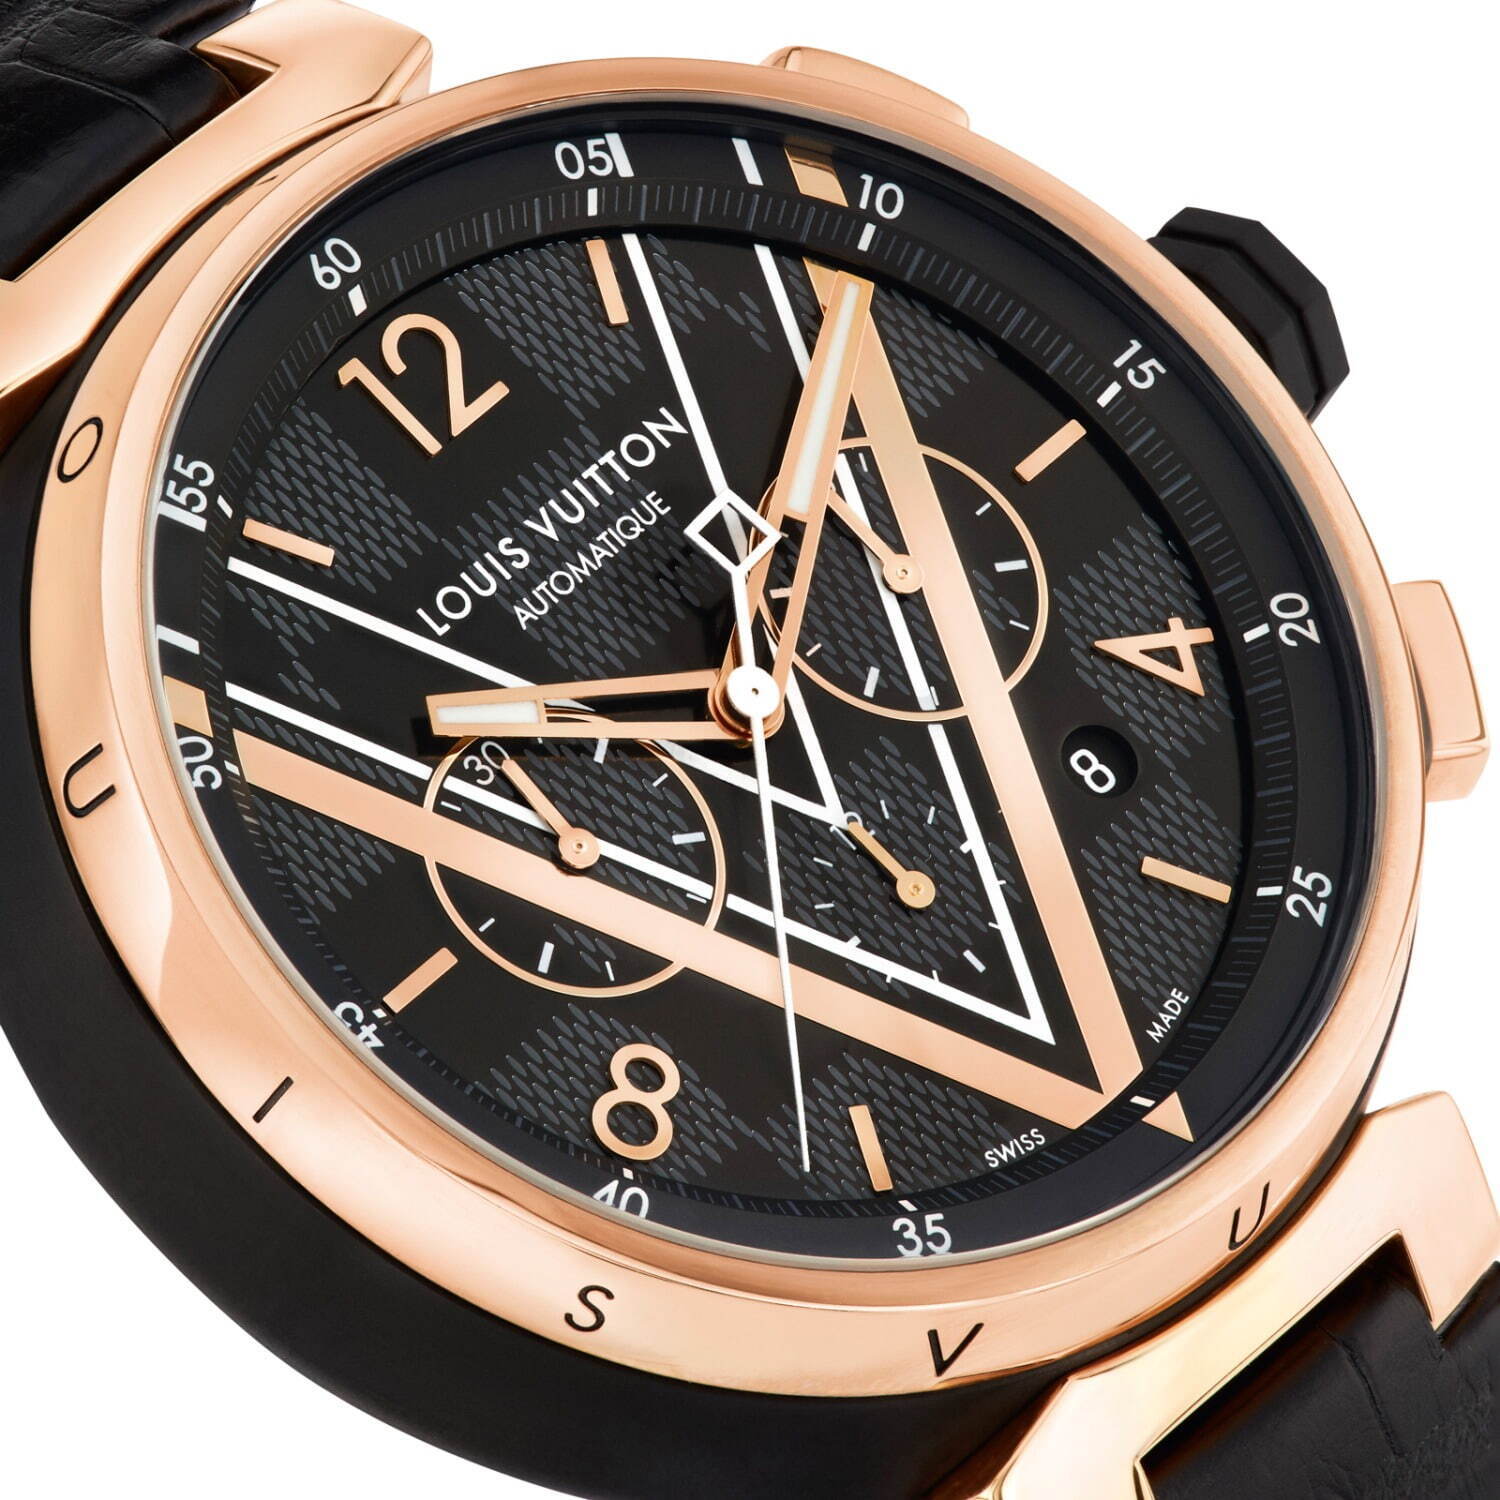 ルイ ヴィトンのメンズ腕時計 タンブール ダミエ グラフィット 新作 ピンクゴールドでエレガントに ファッションプレス